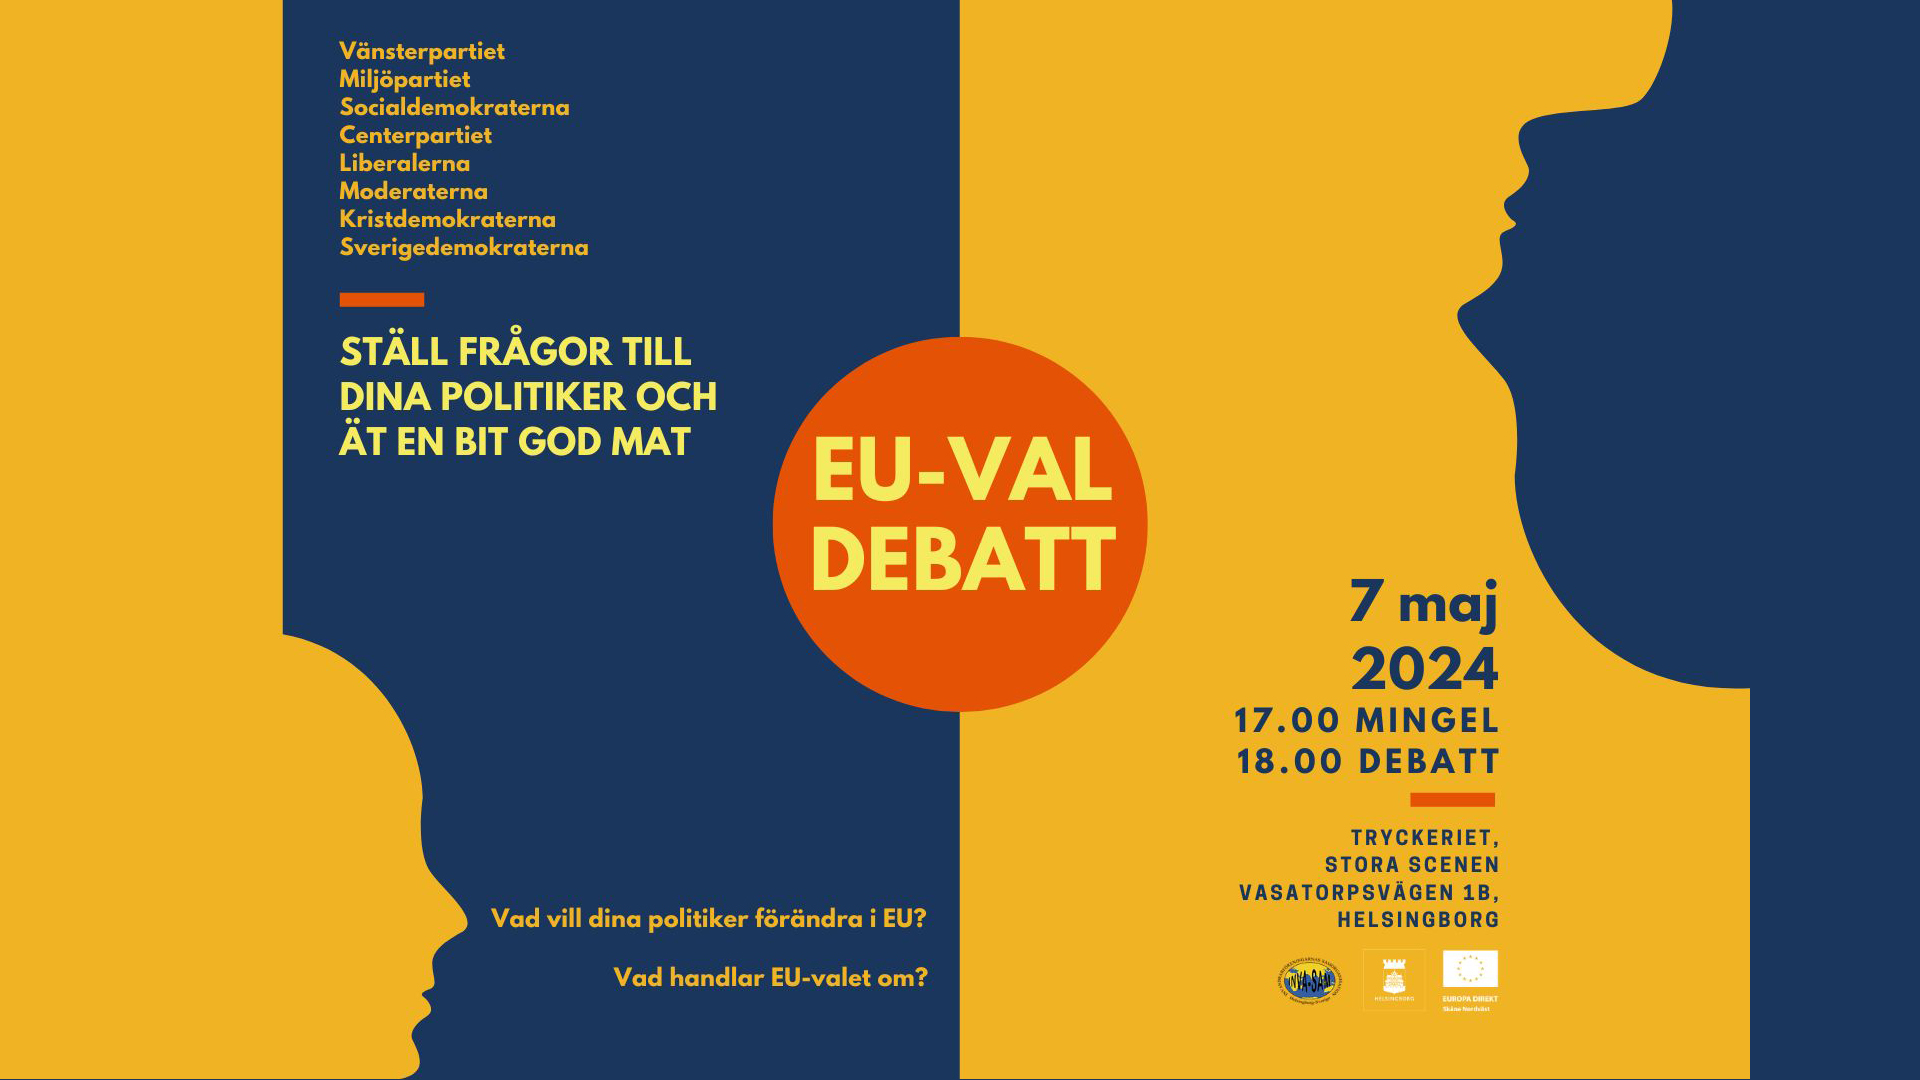 Affisch som kallar till EU-valsdebatten den 7 maj (läs informaitonen i texten)